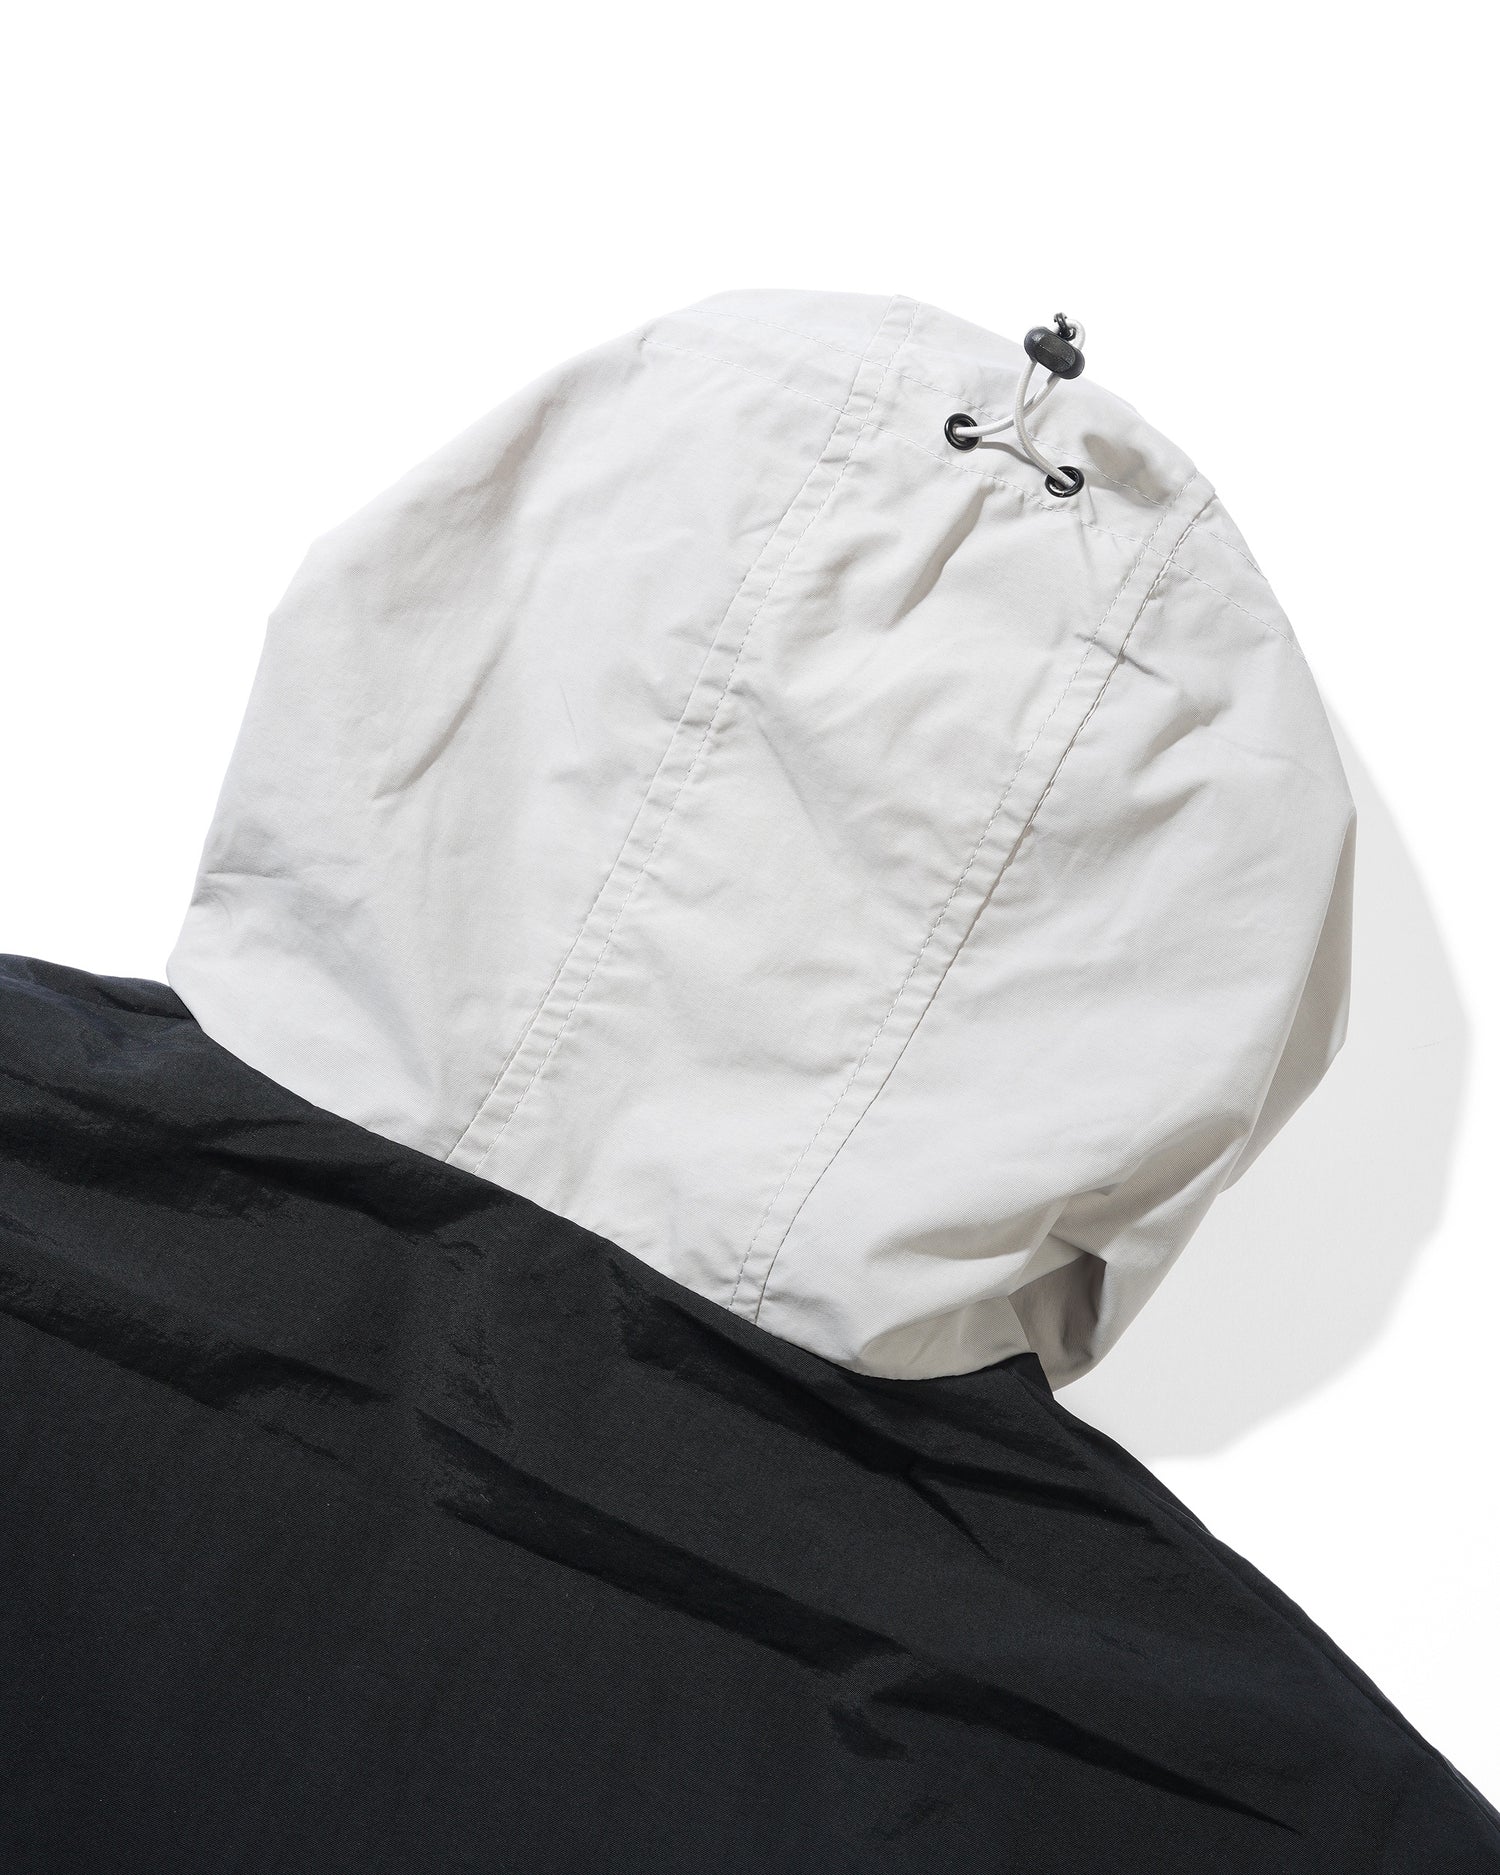 Transit Nylon Jacket, Black / Grey